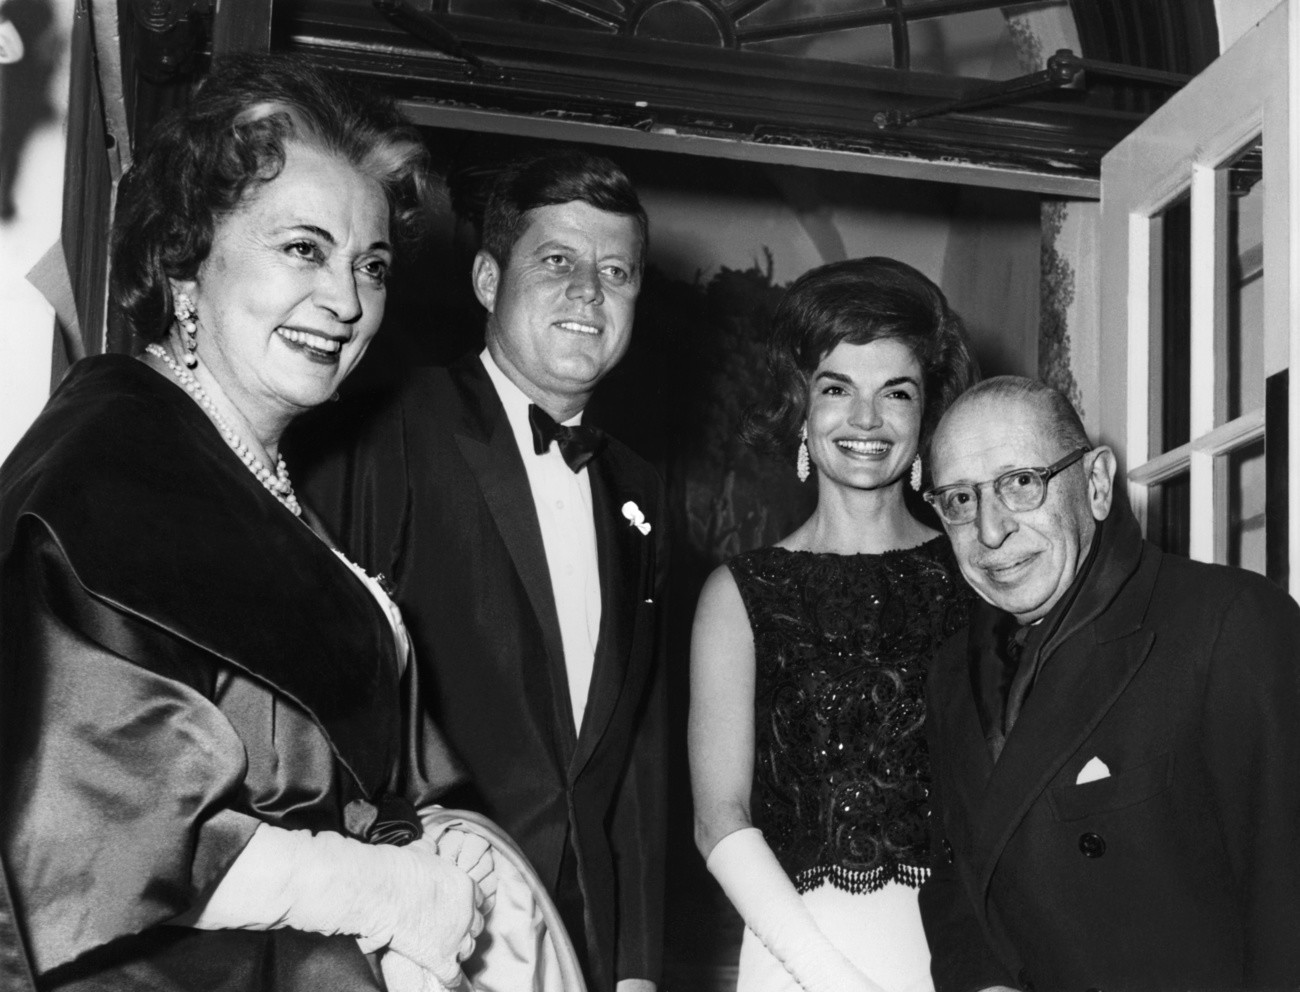 Igor Strawinsky (rechts) mit Präsident John F. Kennedy und Jacqueline Kennedy am 23. Januar 1962 in Washington. Die Dame links im Bild ist nicht identifiziert. (Foto: Keystone/Str)